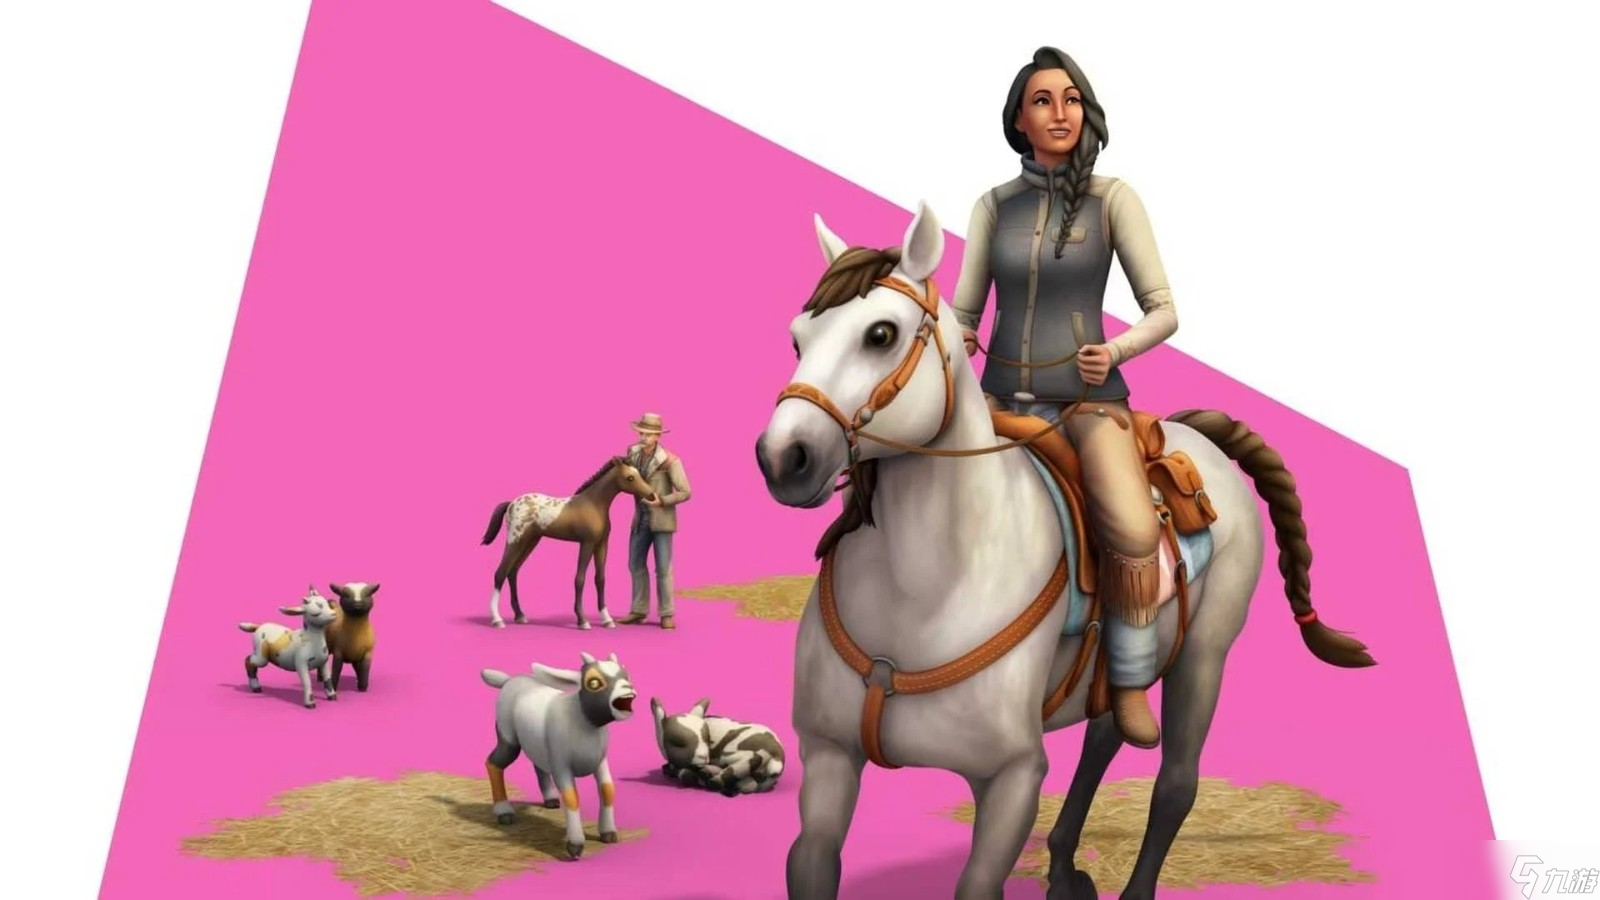 《模拟人生4》新增骏马牧场扩展包 可体验养马生活